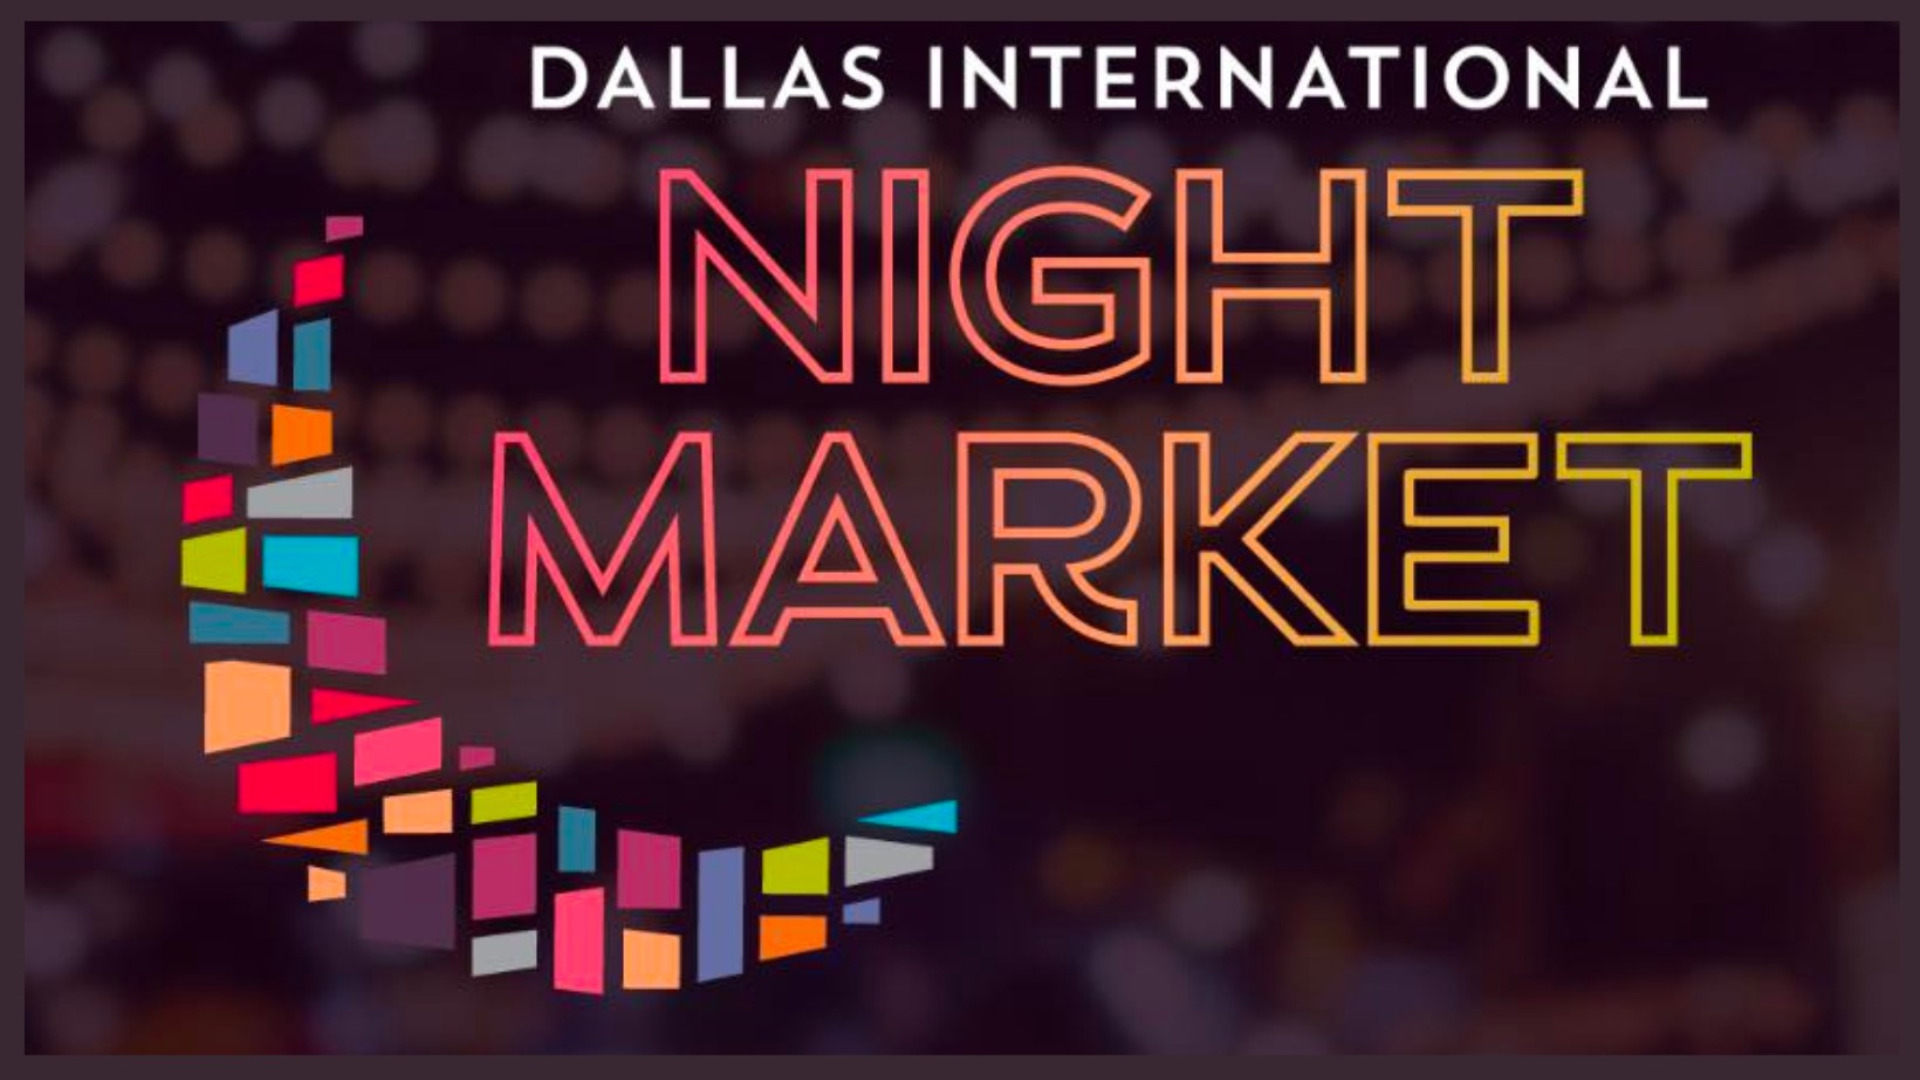 Dallas International Night Market